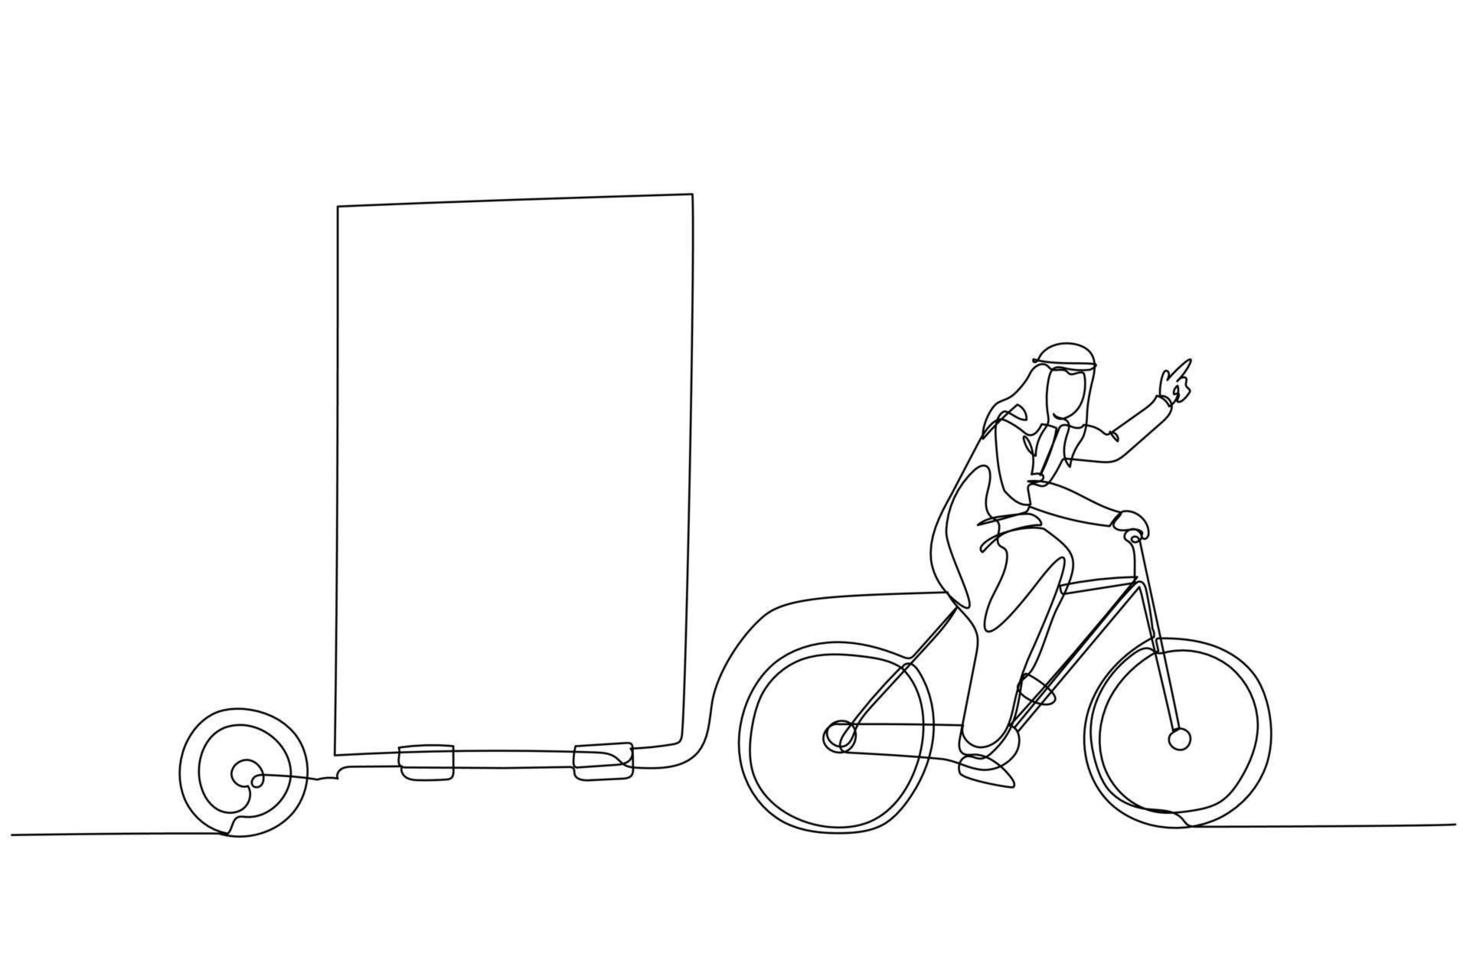 arabo uomo equitazione bicicletta con tabellone trailer concetto di all'aperto annuncio pubblicitario vettore